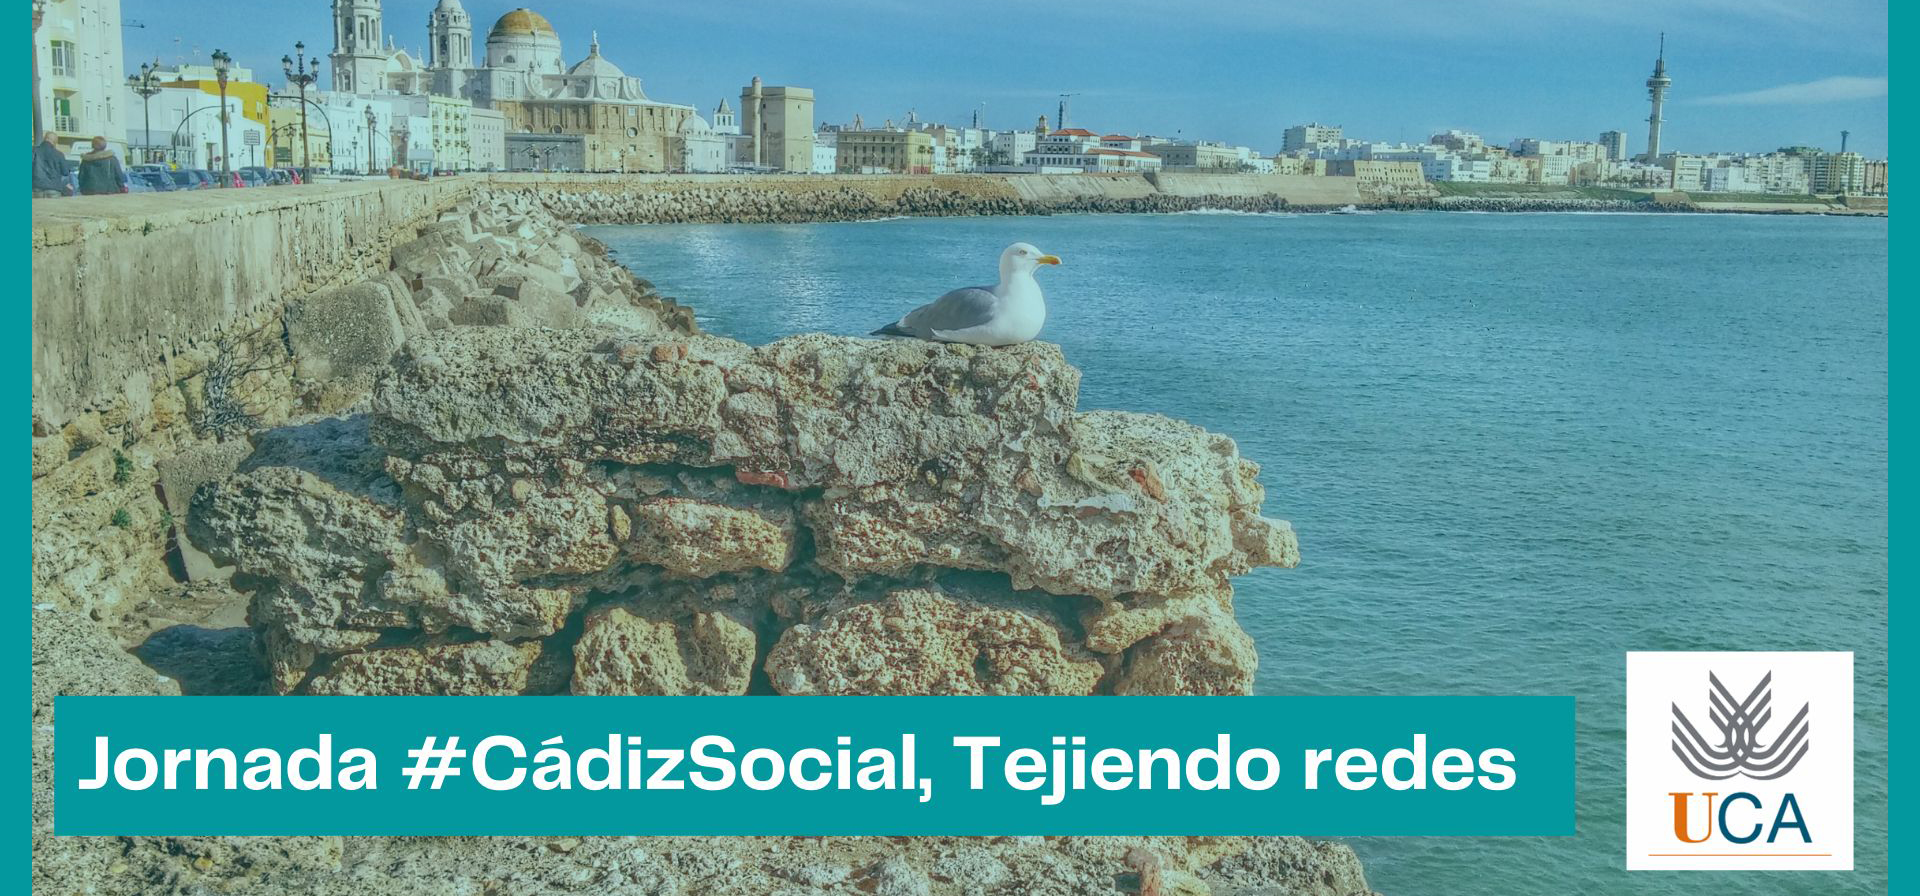 La iniciativa #CádizSocial comienza a tejer sus redes en el emprendimiento, la innovación y la economía social